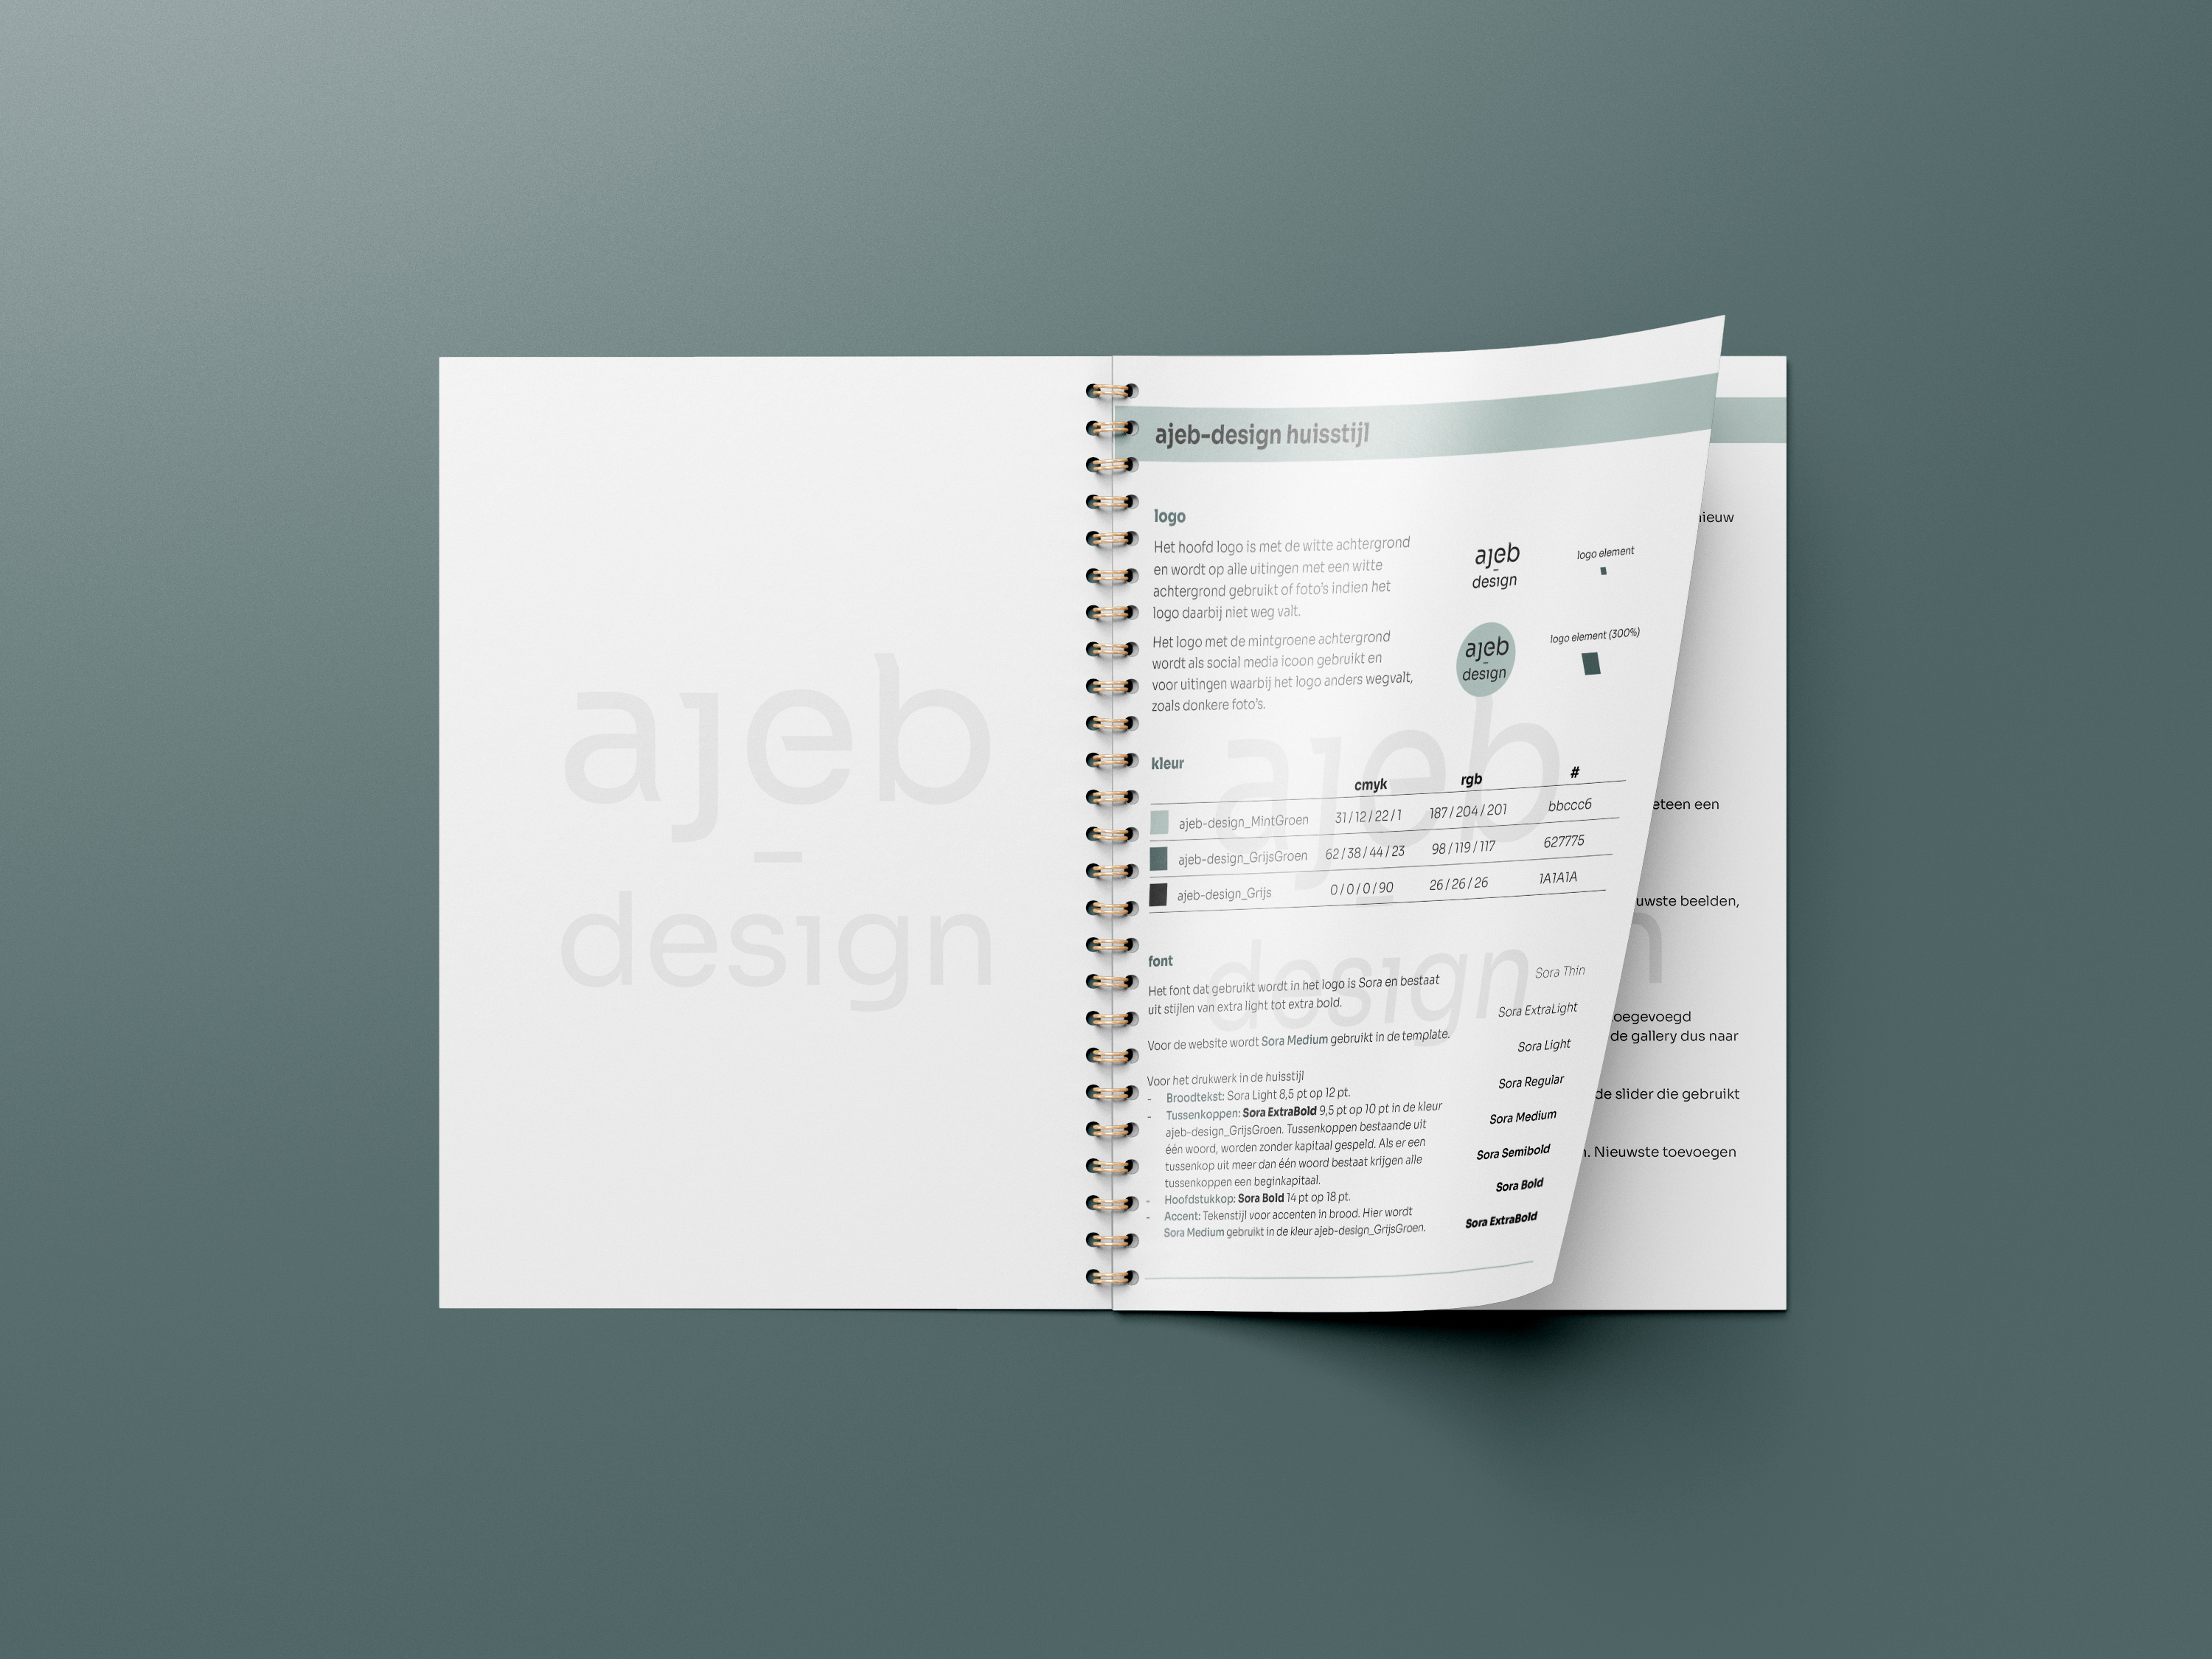 Huisstijlhandboek | ajeb-design